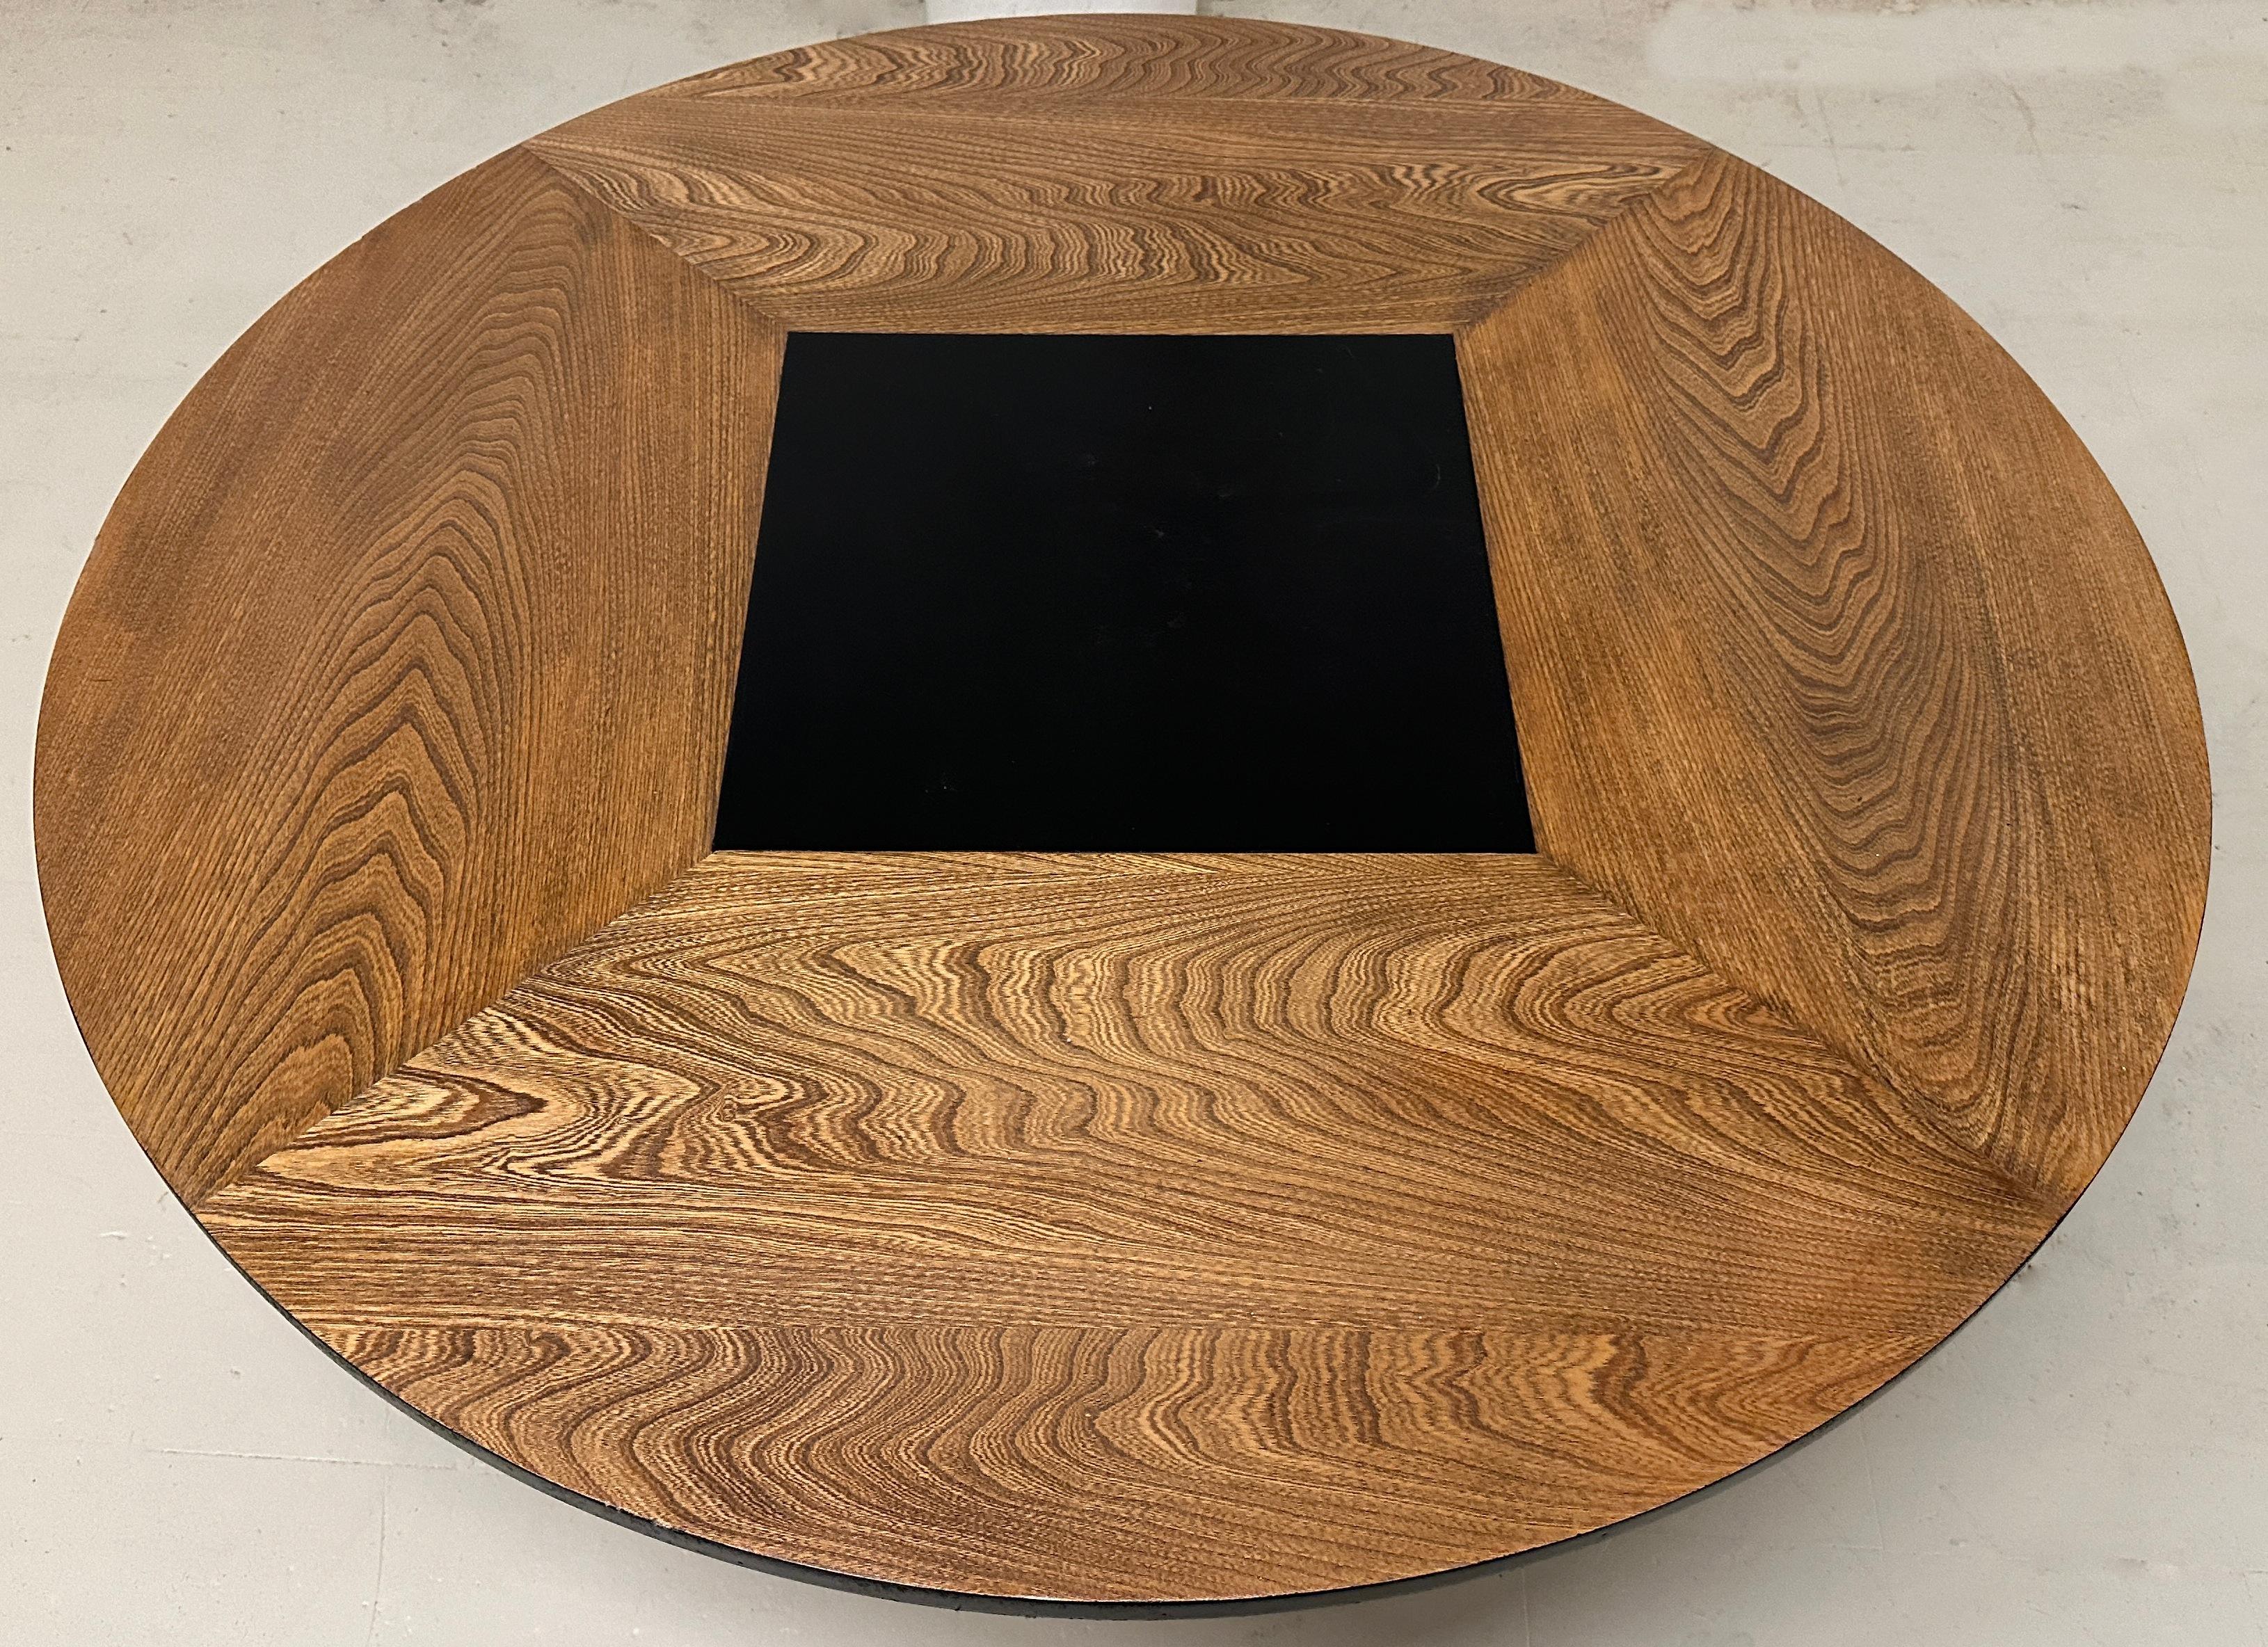 Dieser runde Couchtisch aus schwarzem Nussbaumholz, der von Harvey Probber entworfen wurde, ist nicht nur ein funktionales Stück, sondern auch ein Statement für das klassische Design der Jahrhundertmitte.

Der Tisch steht auf Beinen, die in einer